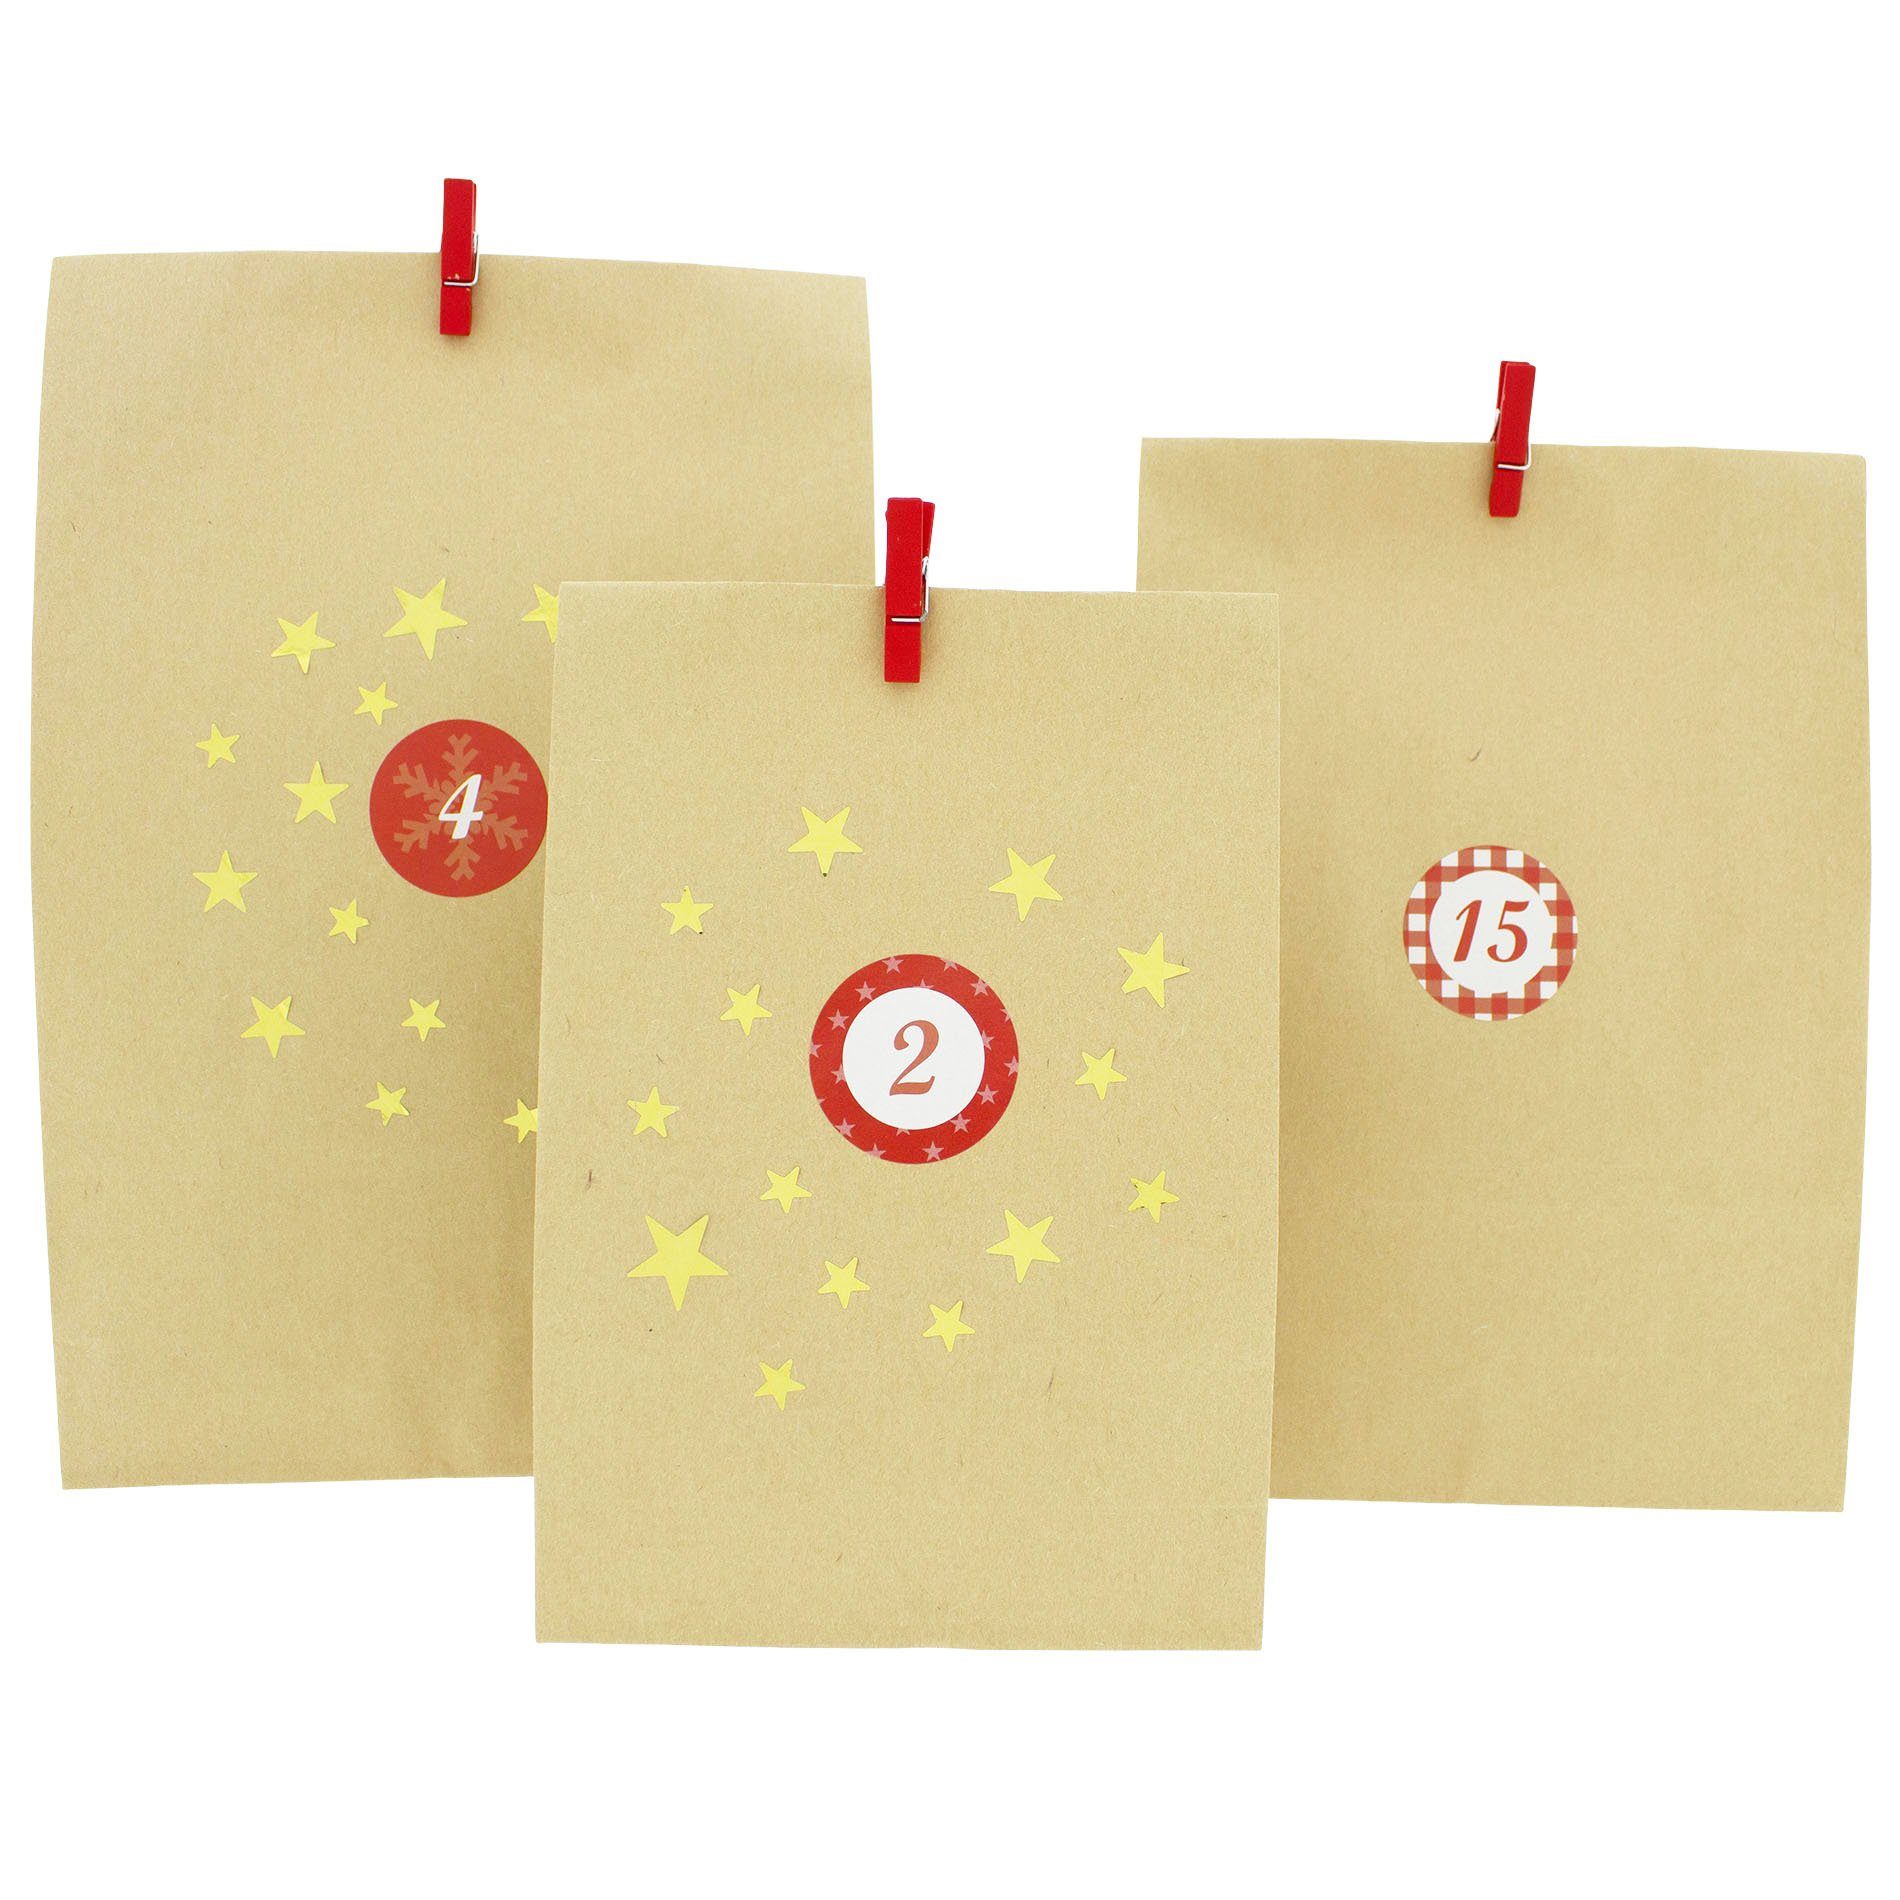 72-teilig Adventskalender zum befüllbarer youself Do Befüllen + 134 Advent it Kalender Adventskalender Sterne-Sticker, Annastore DIY